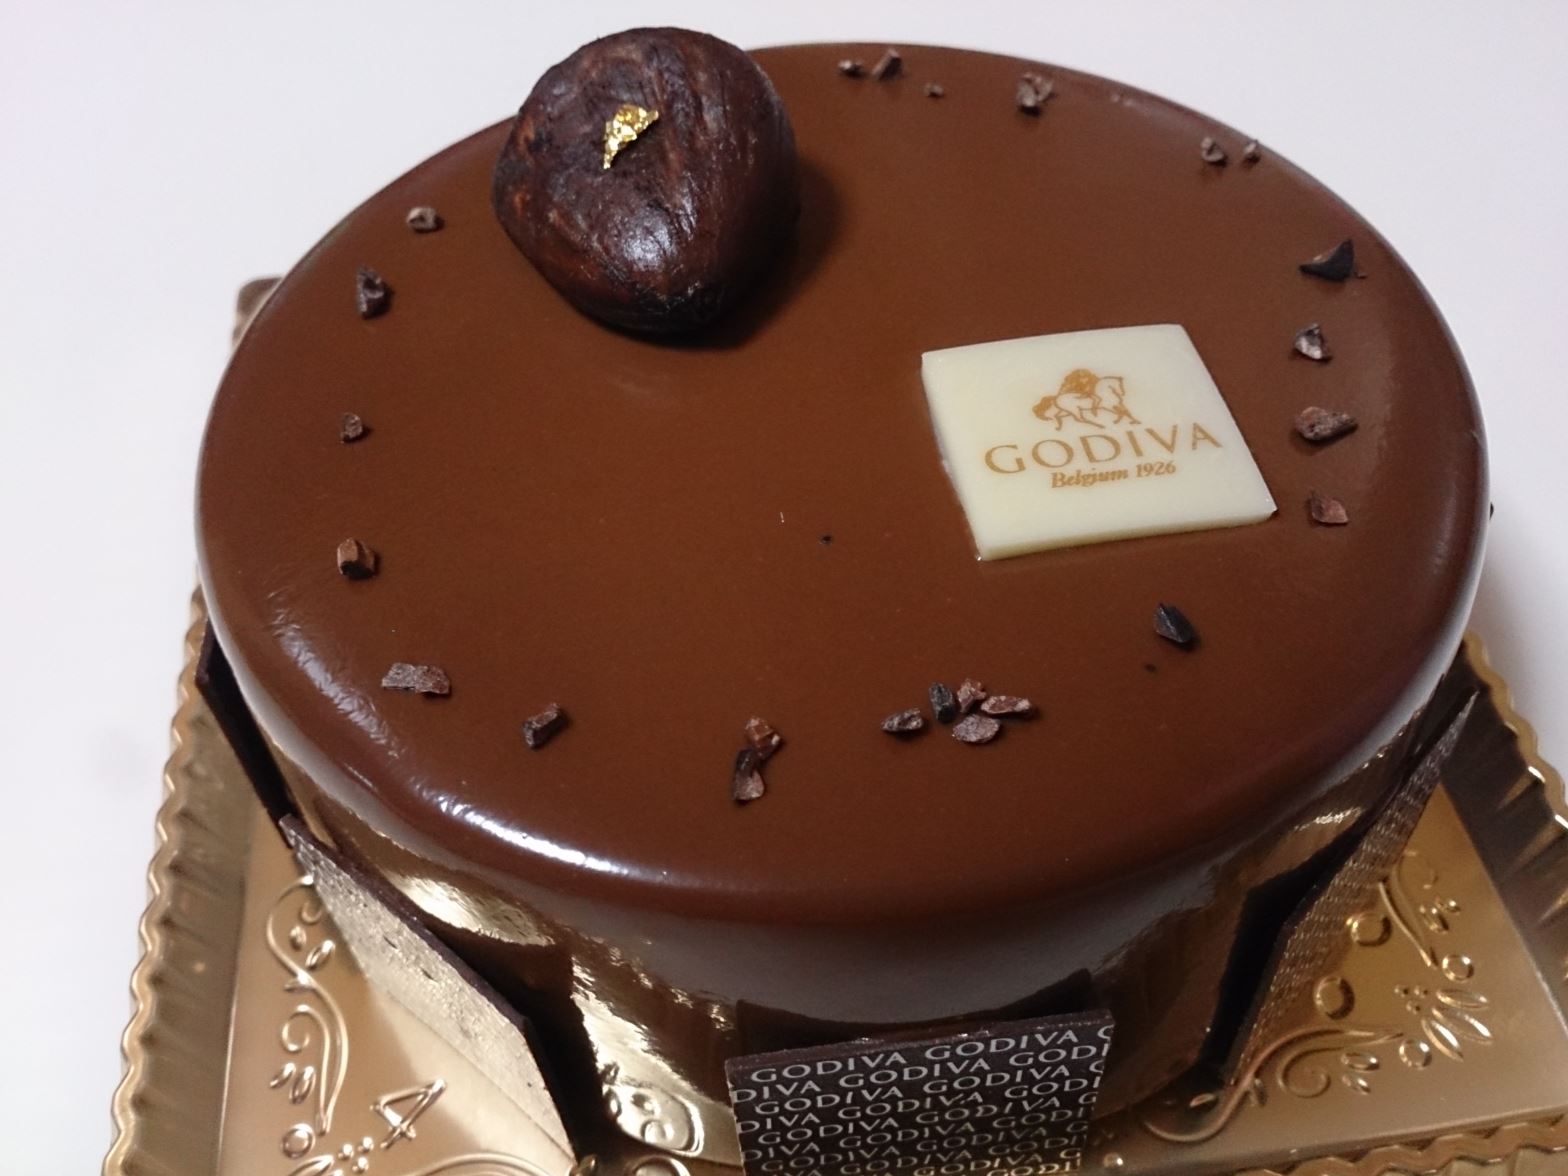 14年に元デブが食べるべき 今年のクリスマスケーキ ケーキ Godiva 渋谷 ダイエット成功者の華麗なる食生活